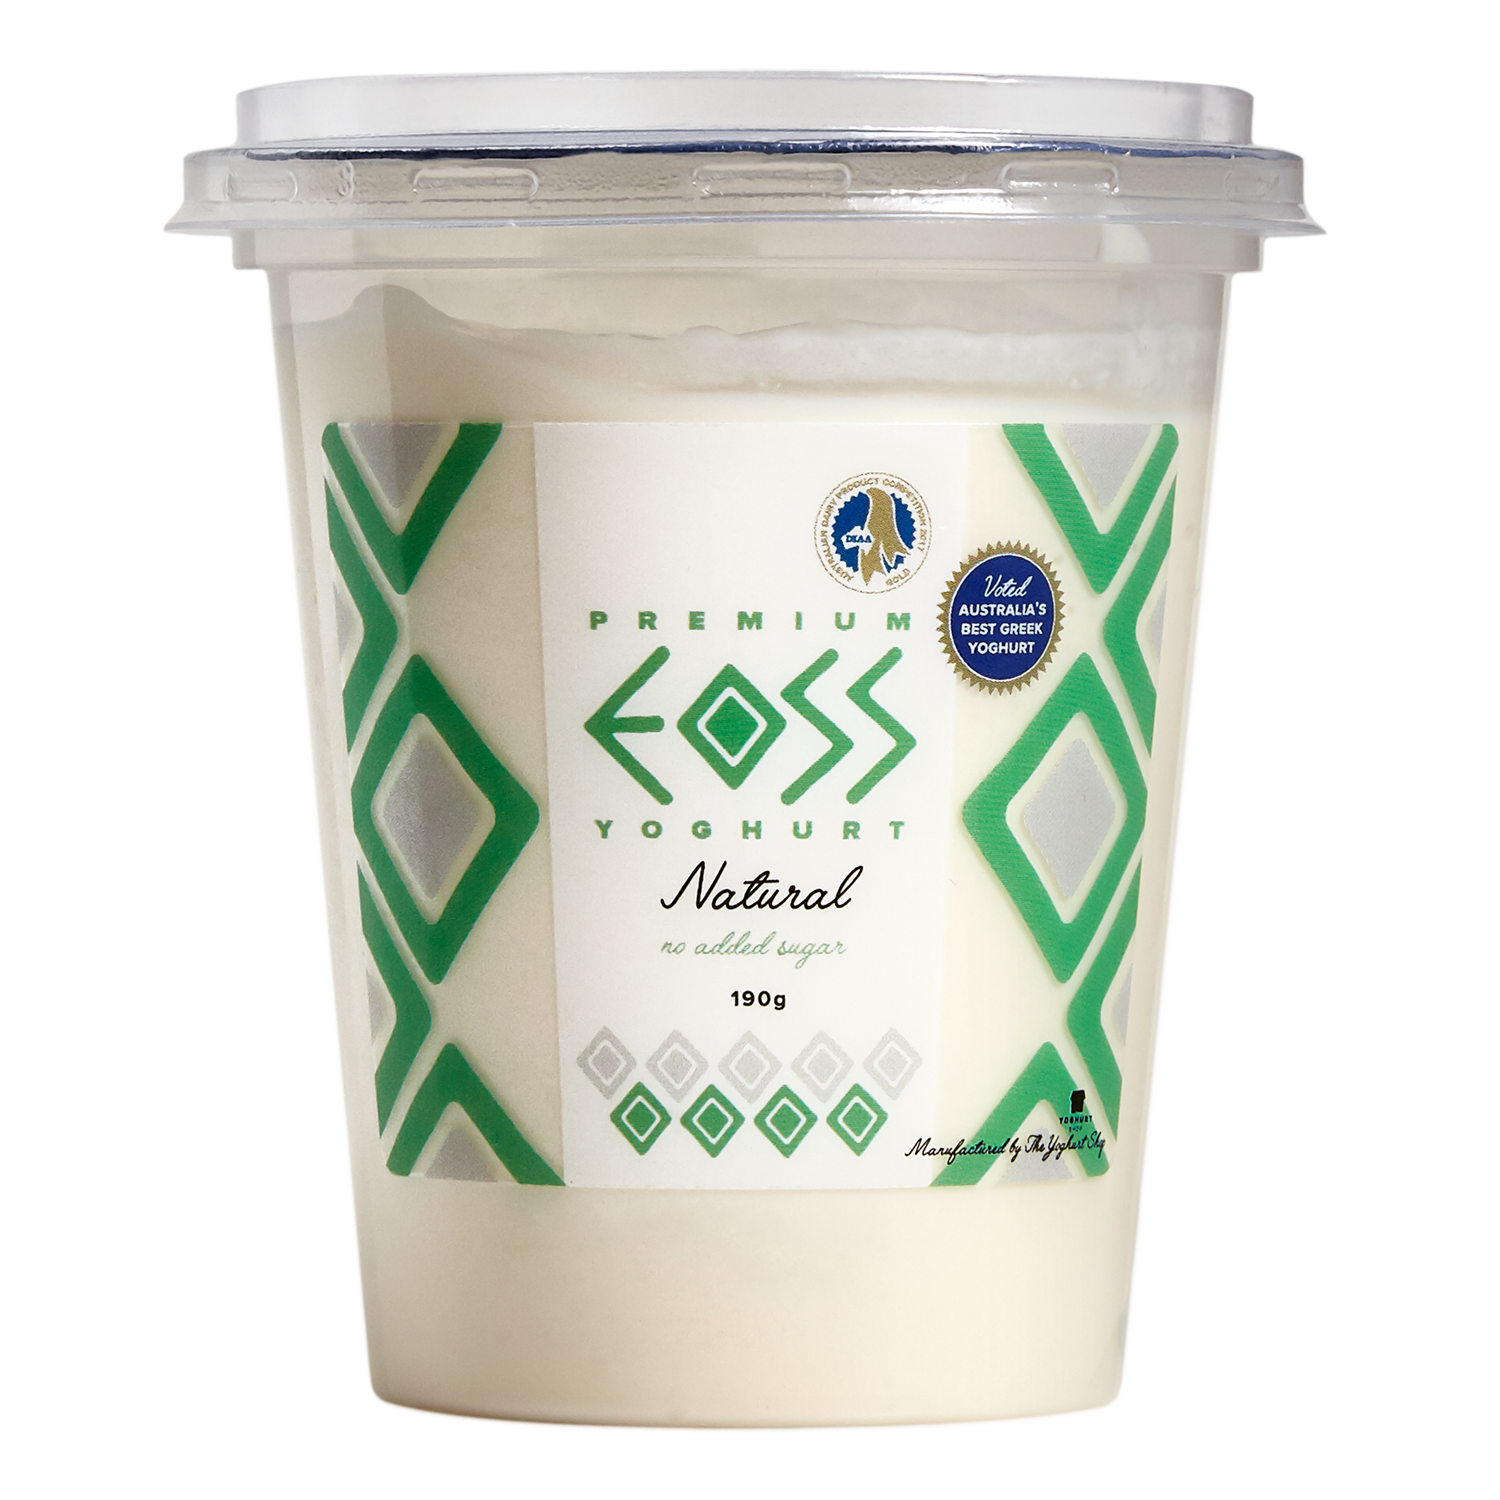 EOSS Yoghurt Natural Cup 190g